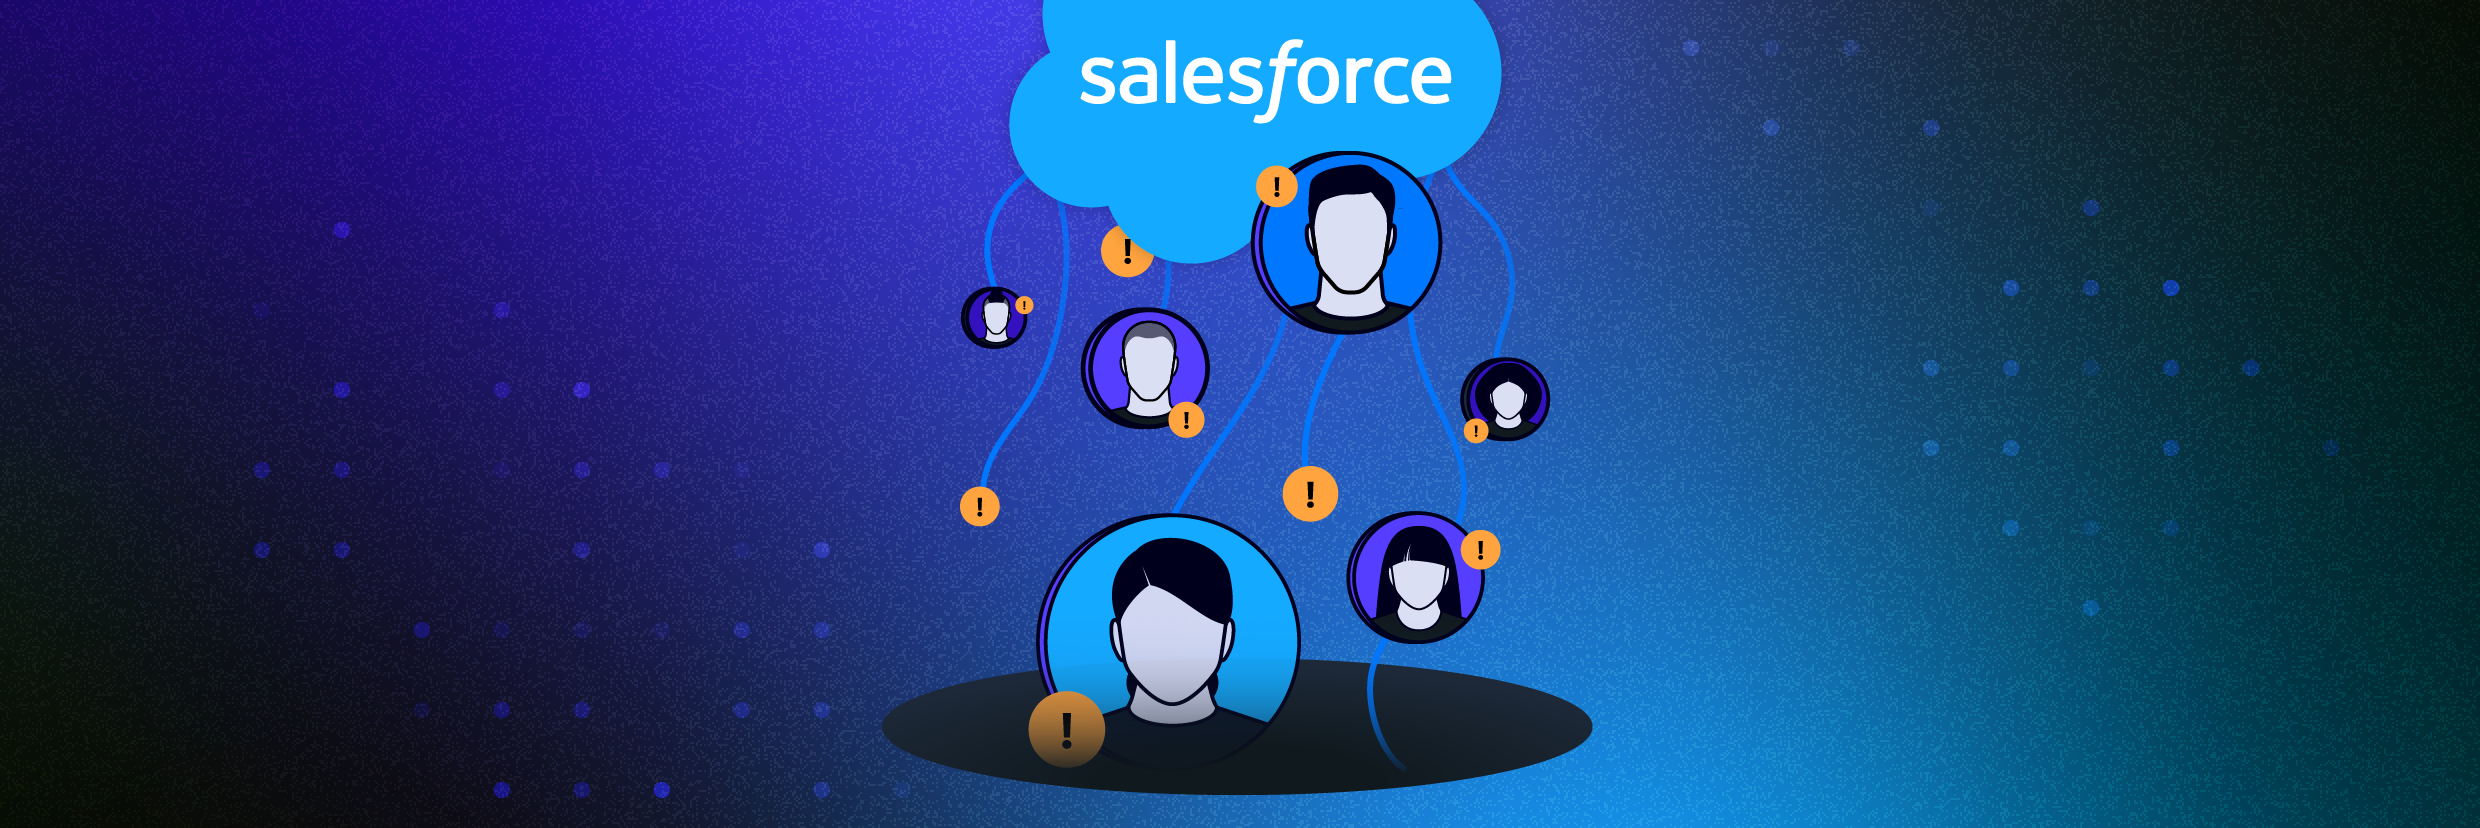 Logo Salesforce avec des utilisateurs flottant en haut, présentant trop d’autorisations partagées et d’accès au profil